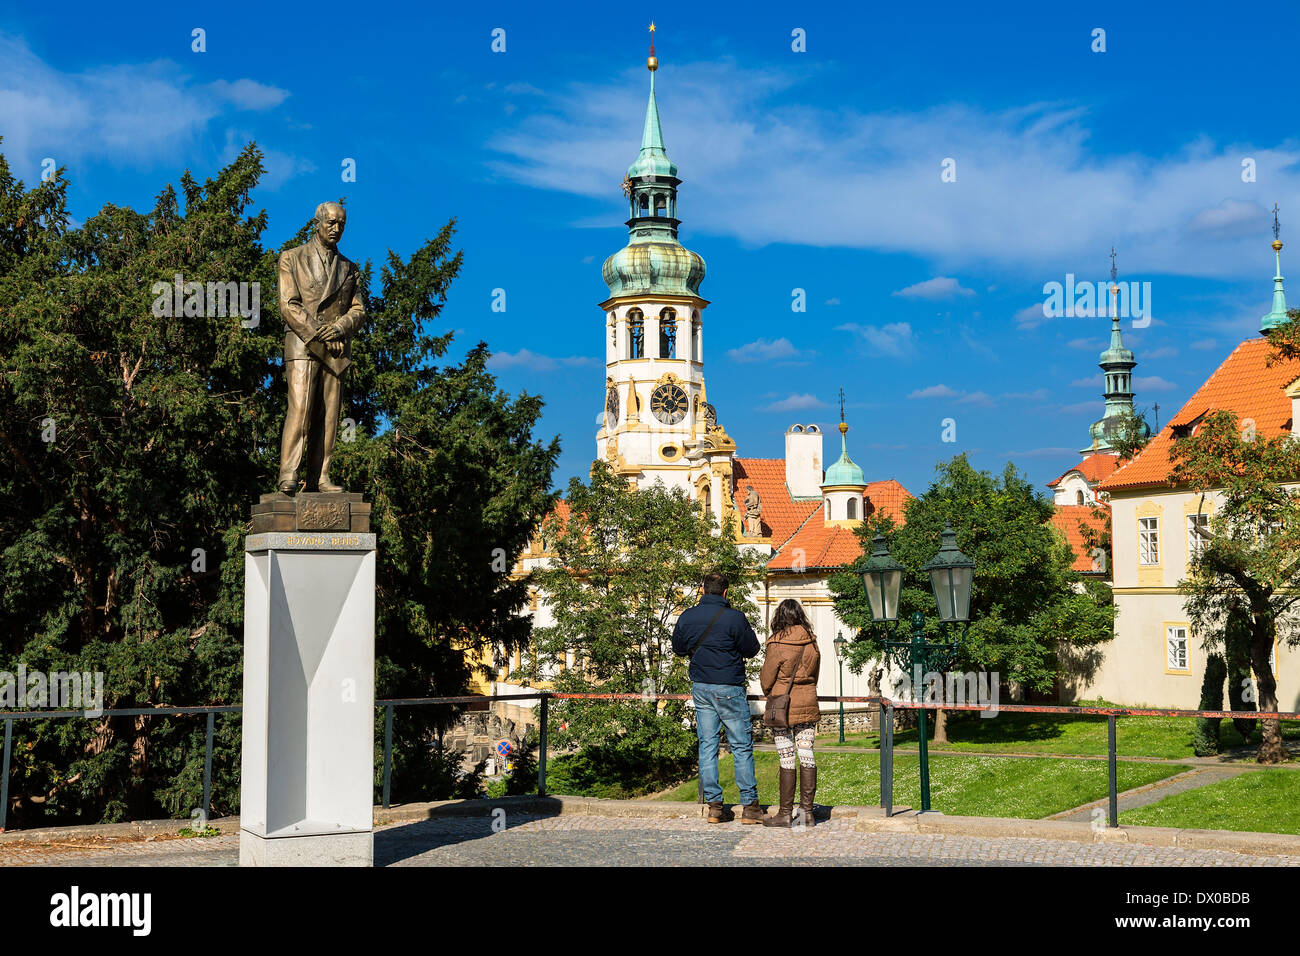 Praga Repubblica Ceca, il santuario di Loreta in Loretanske namesti Hradcany Foto Stock